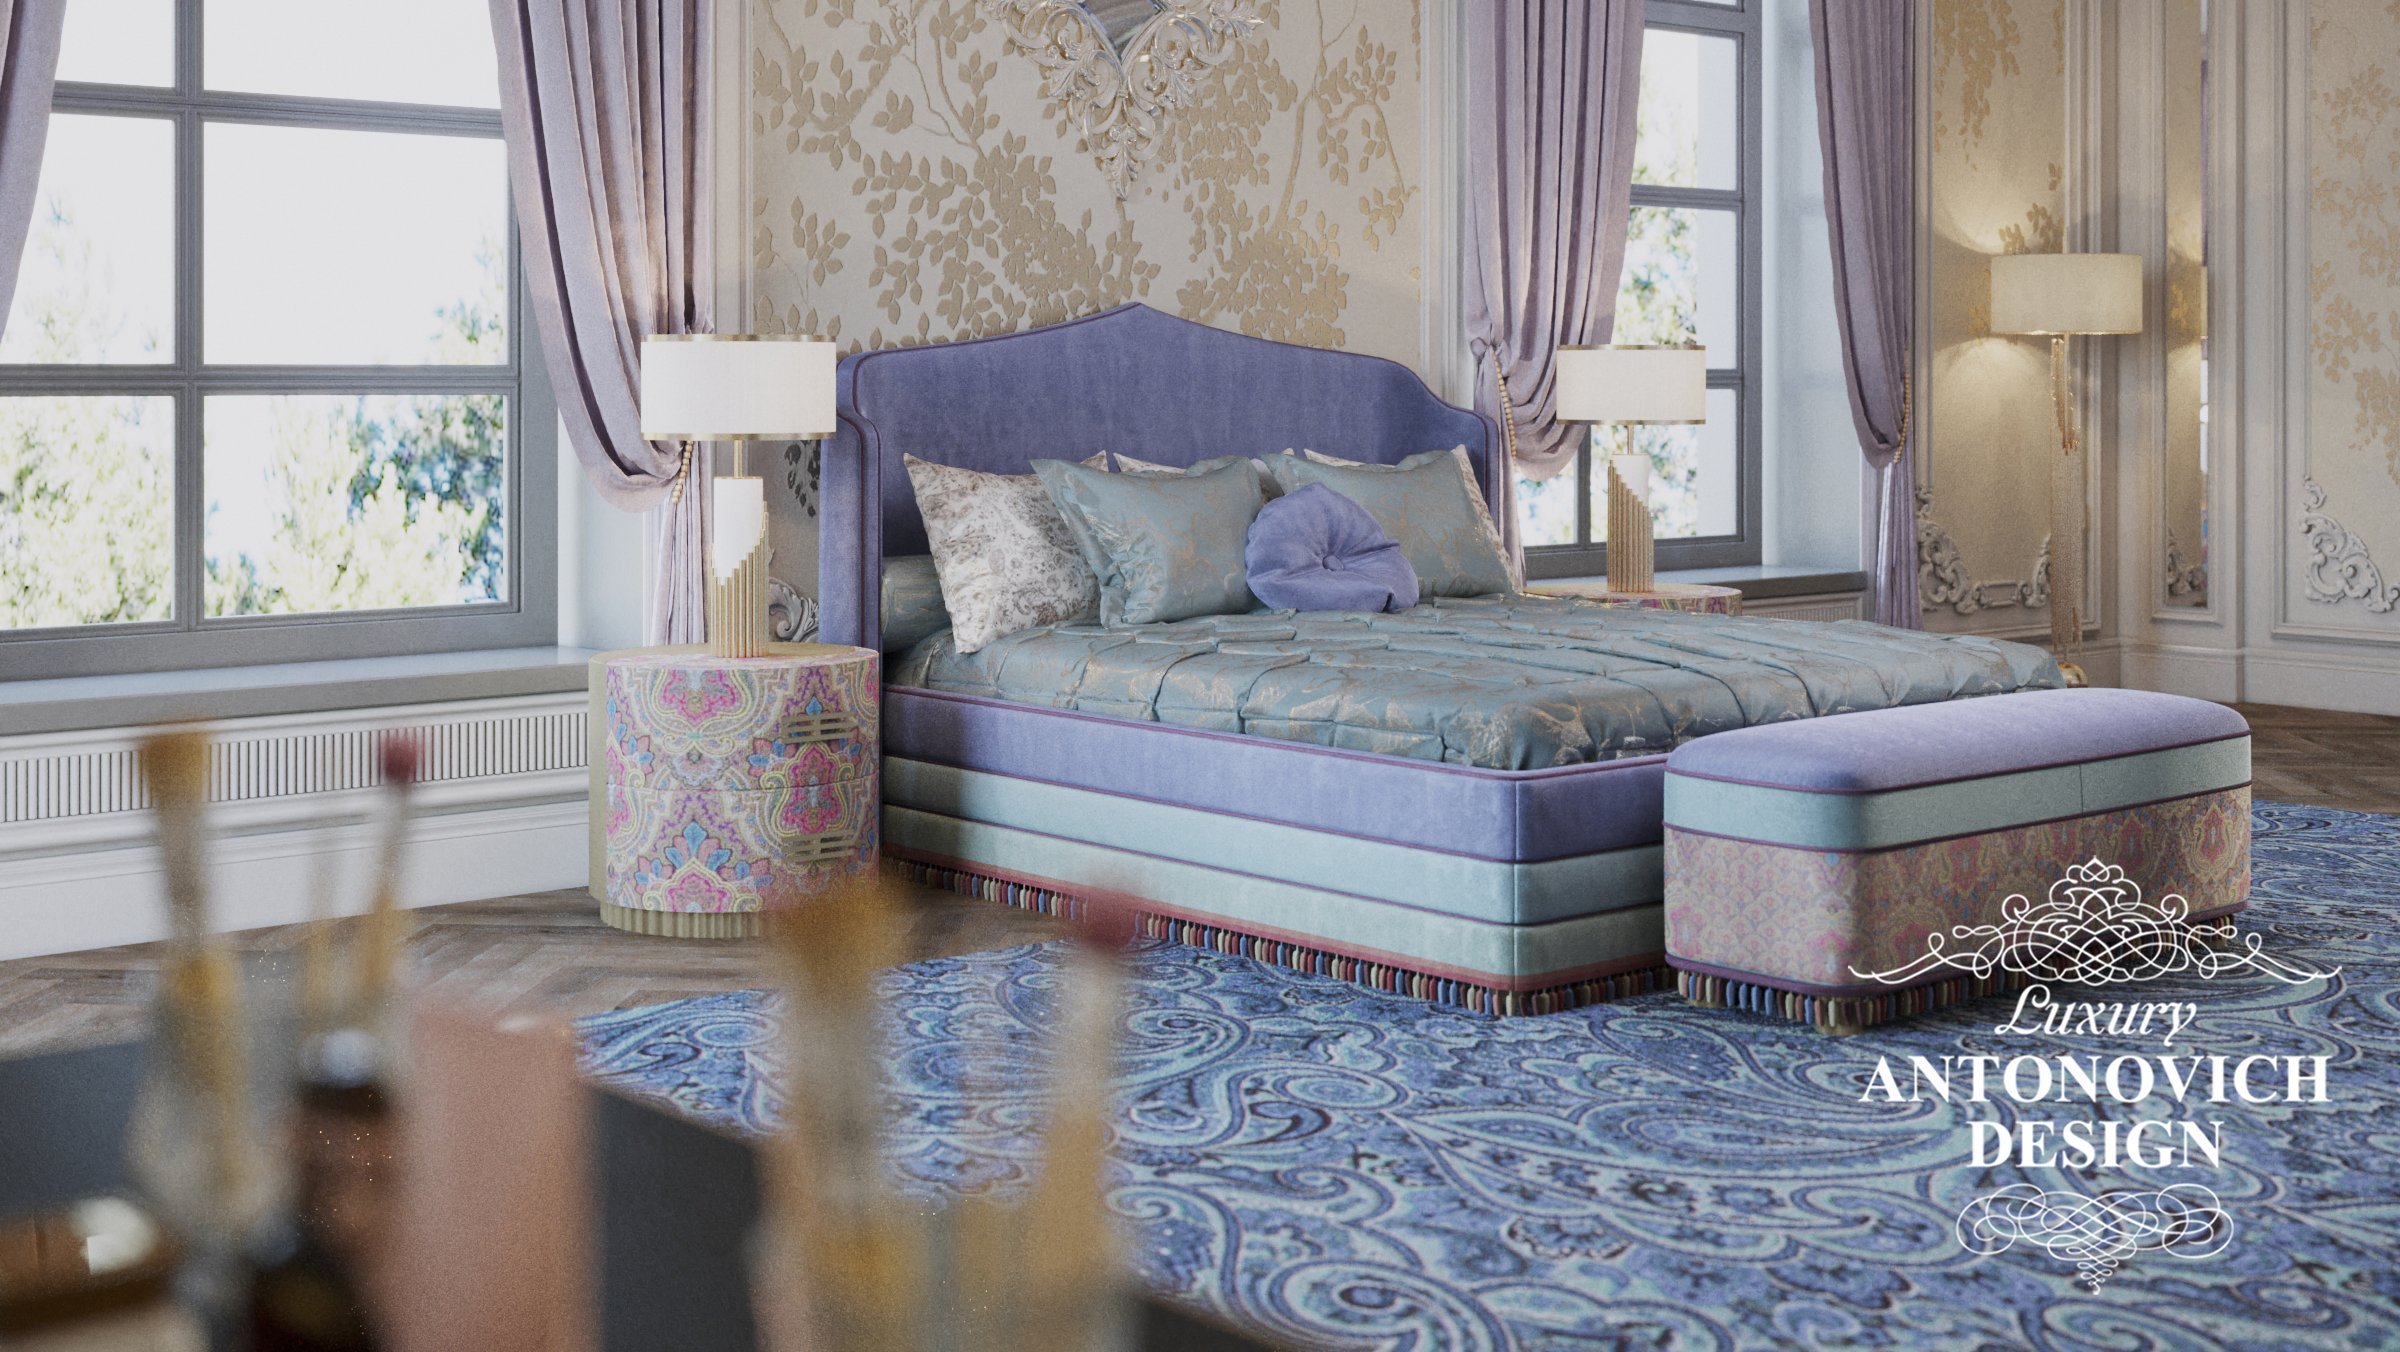 дизайн интерьера спальни в классическом стиле